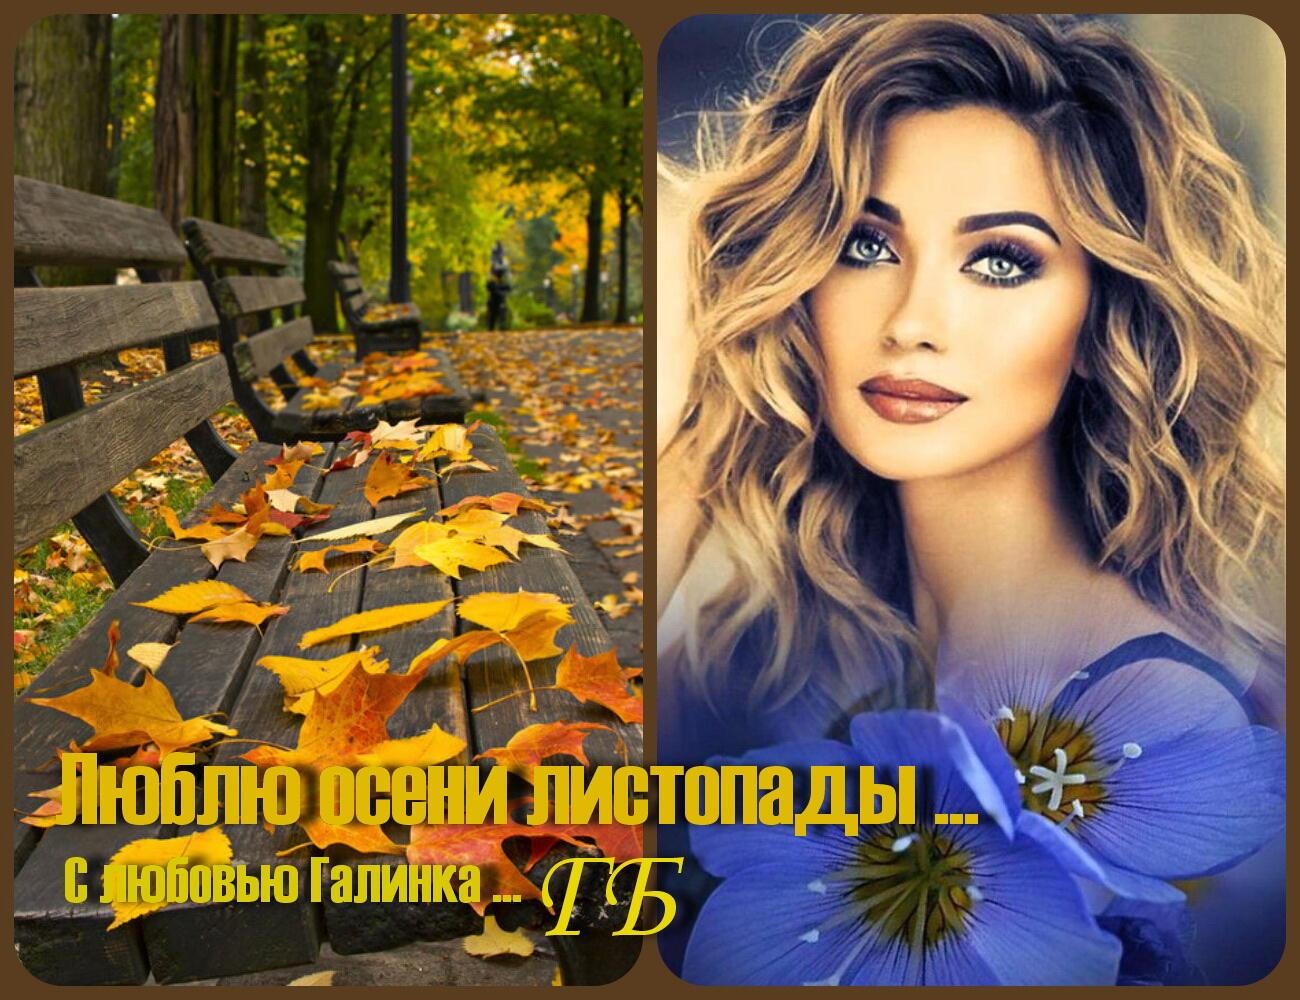 Люблю осени листопады ...  Галинка Багрецова